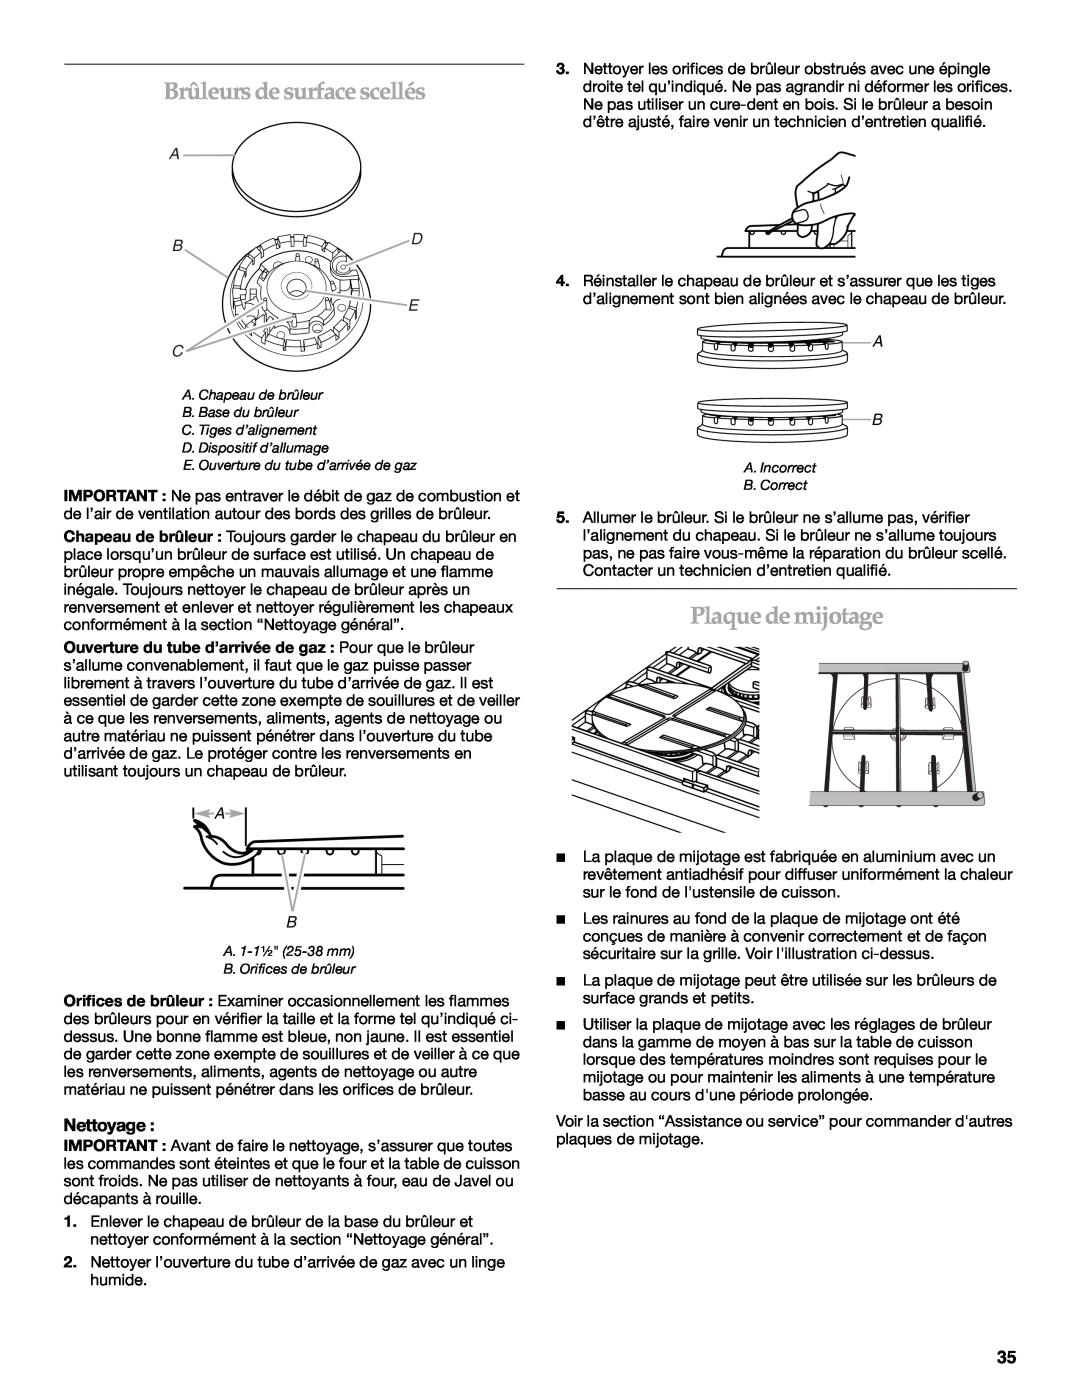 KitchenAid KDRP407 KDRP462 manual Brûleurs de surface scellés, Plaque de mijotage, Nettoyage, Bd E C 